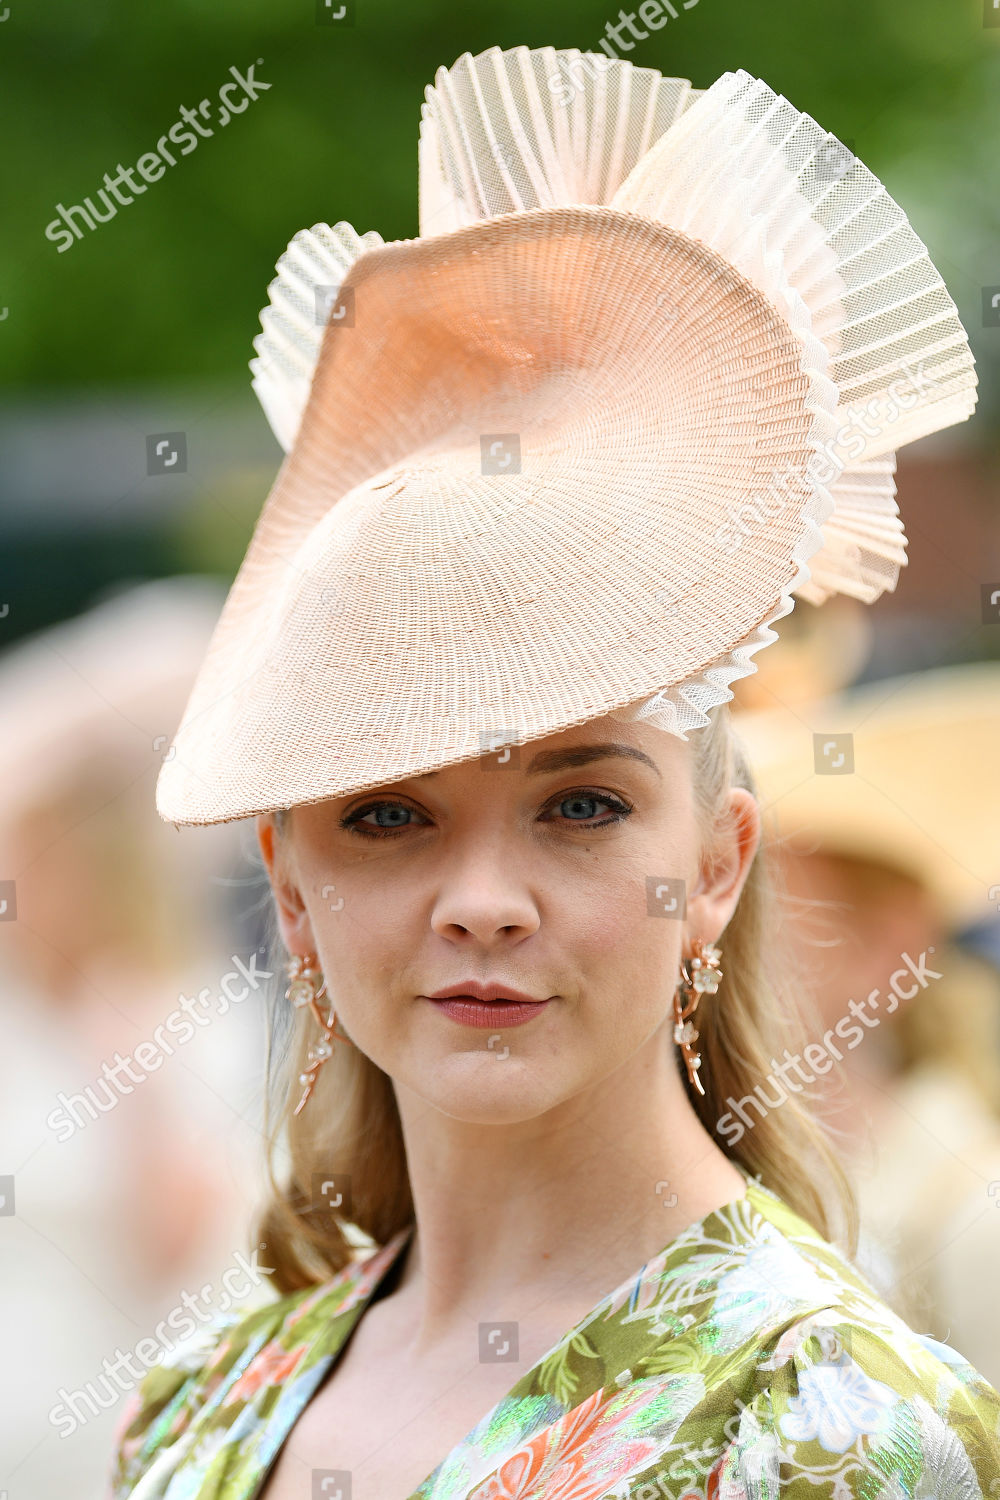 royal-ascot-ladies-day-uk-20-jun-2019-shutterstock-editorial-10317166bo.jpg